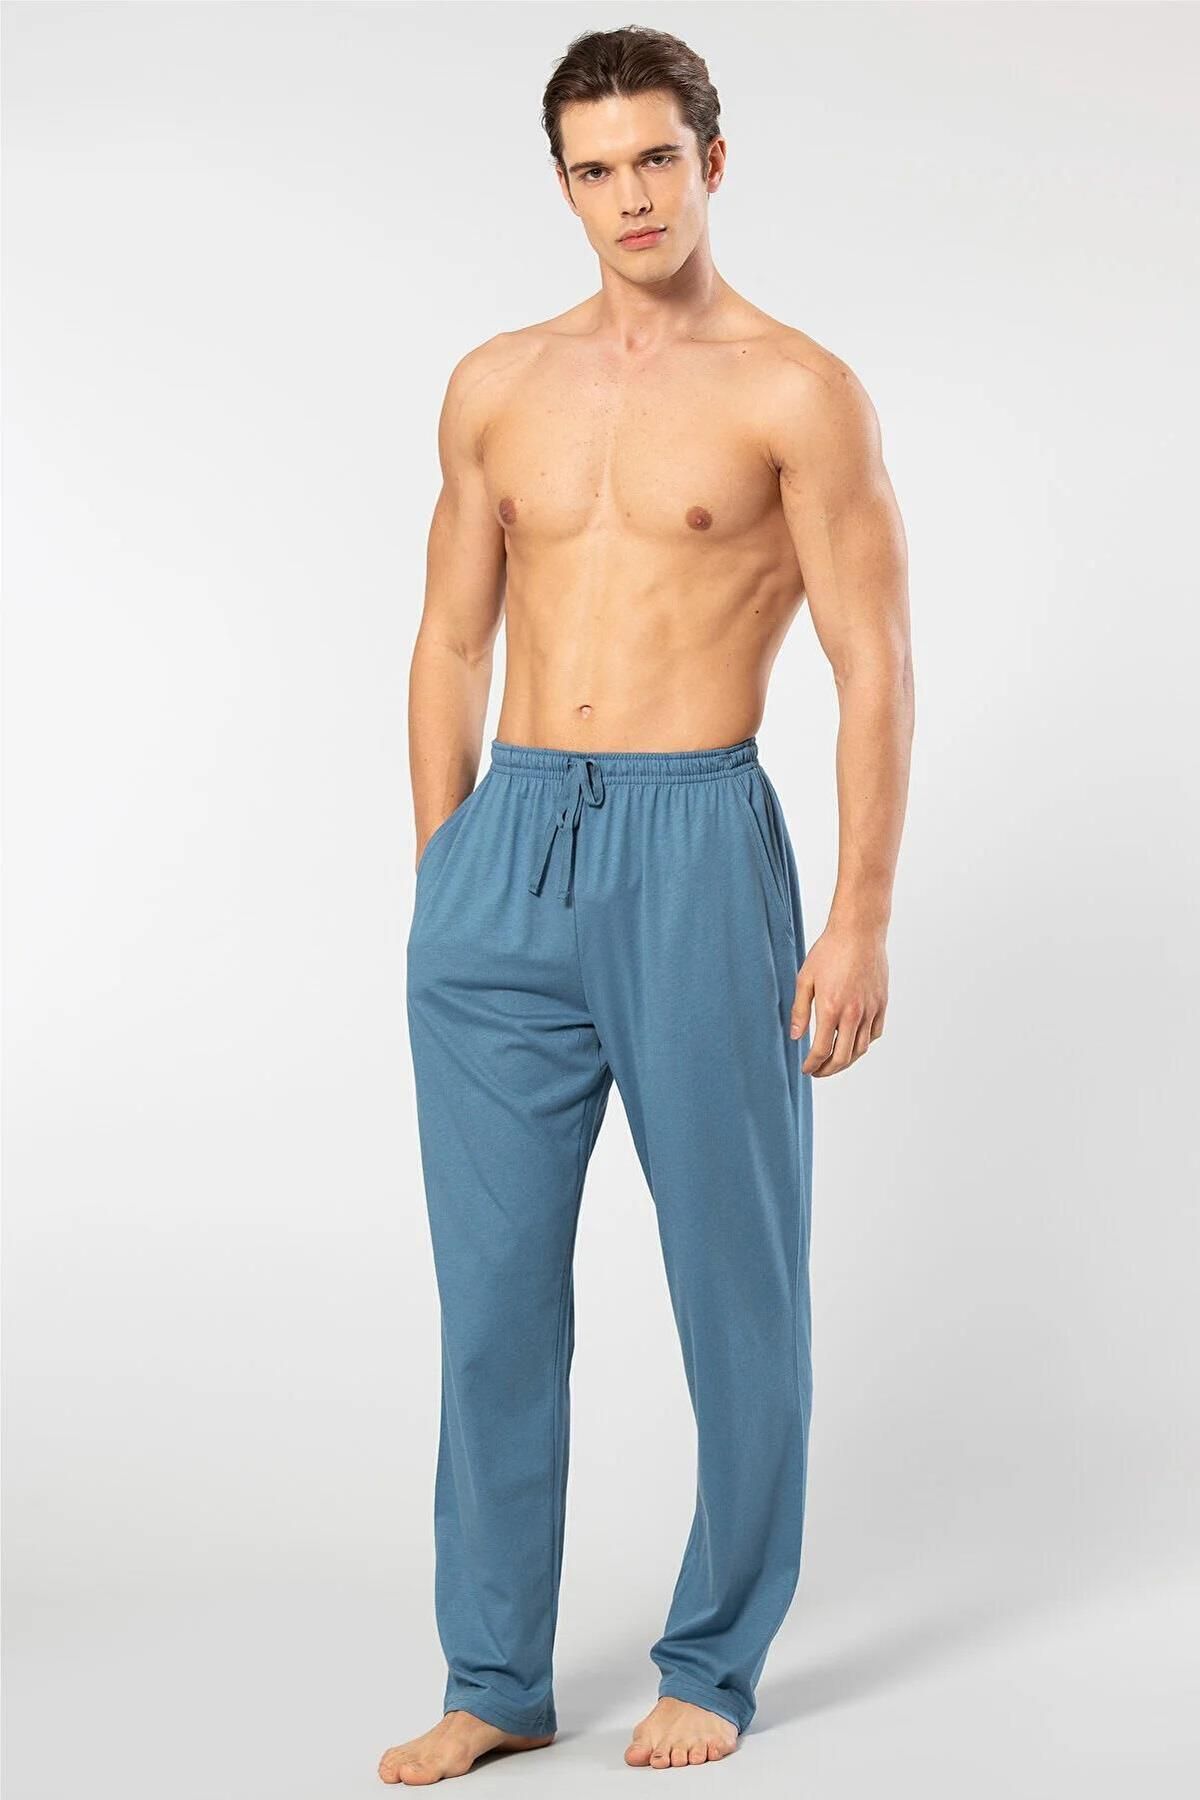 Cacharel Pamuklu Model Kumaş Erkek Alt Pijama